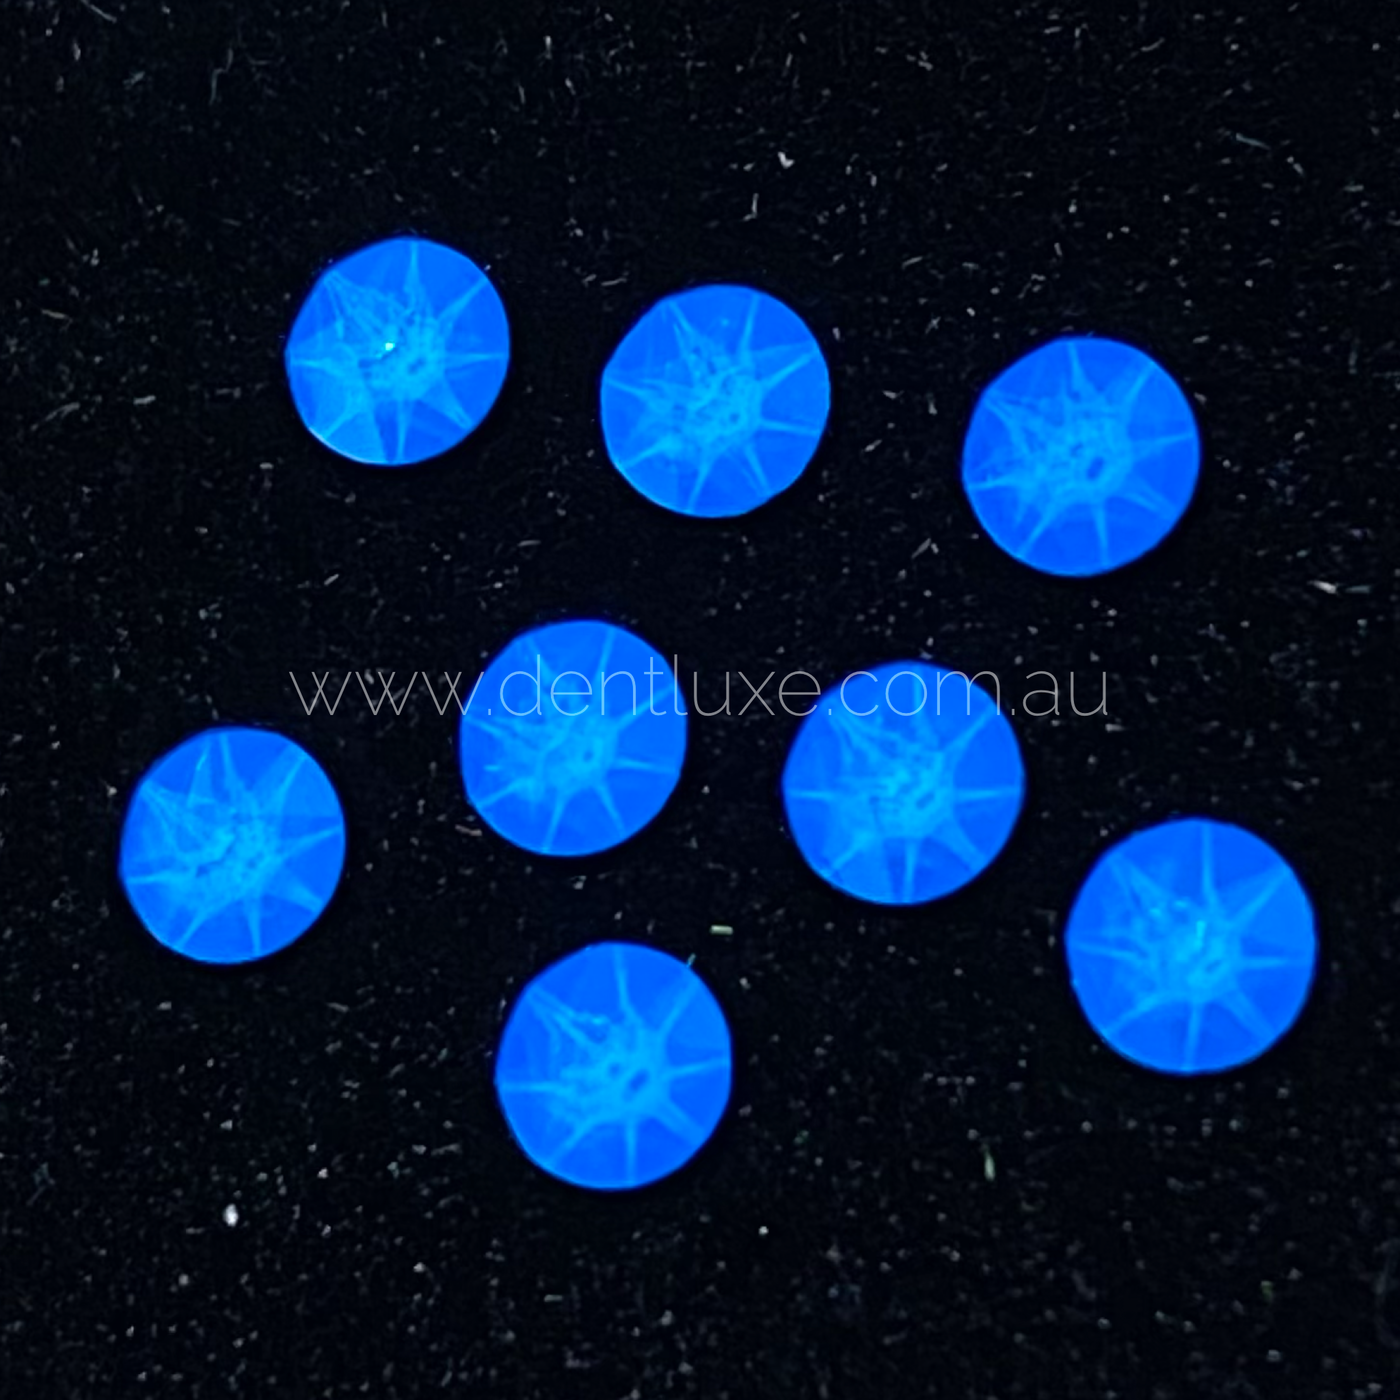 Swarovski Fluorescent Neon Blue Tooth Gems - Dentluxe